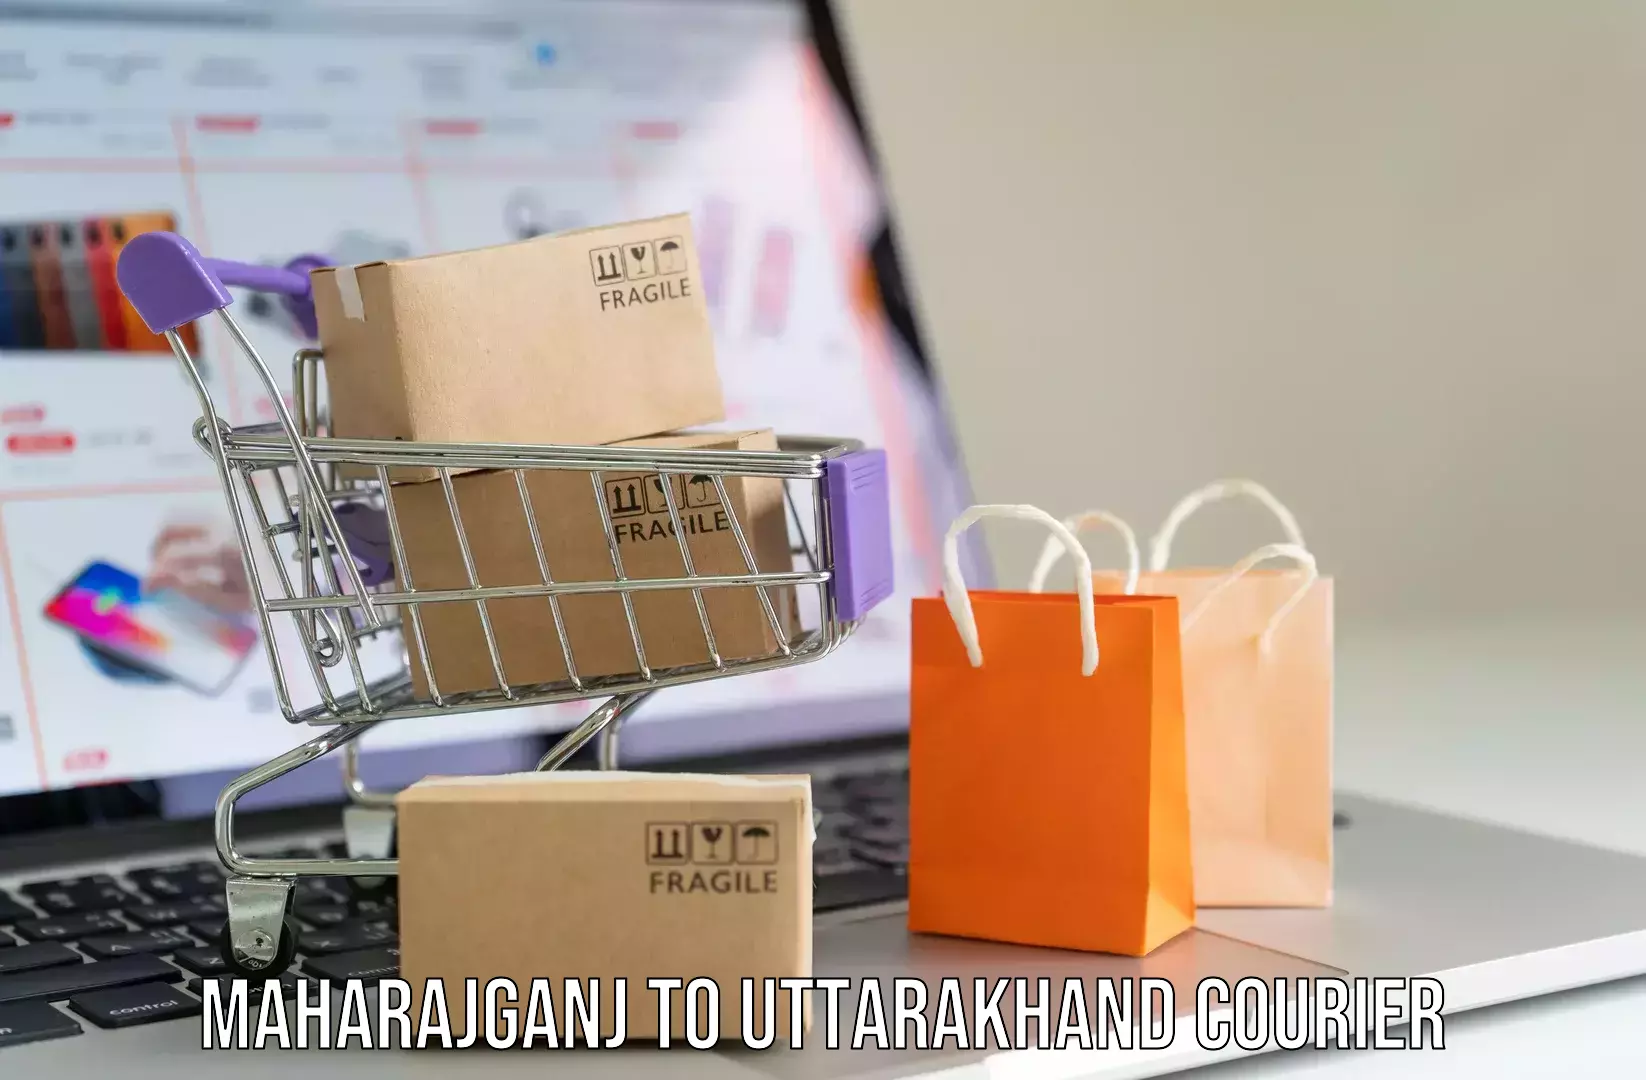 Luggage transport service Maharajganj to Uttarakhand